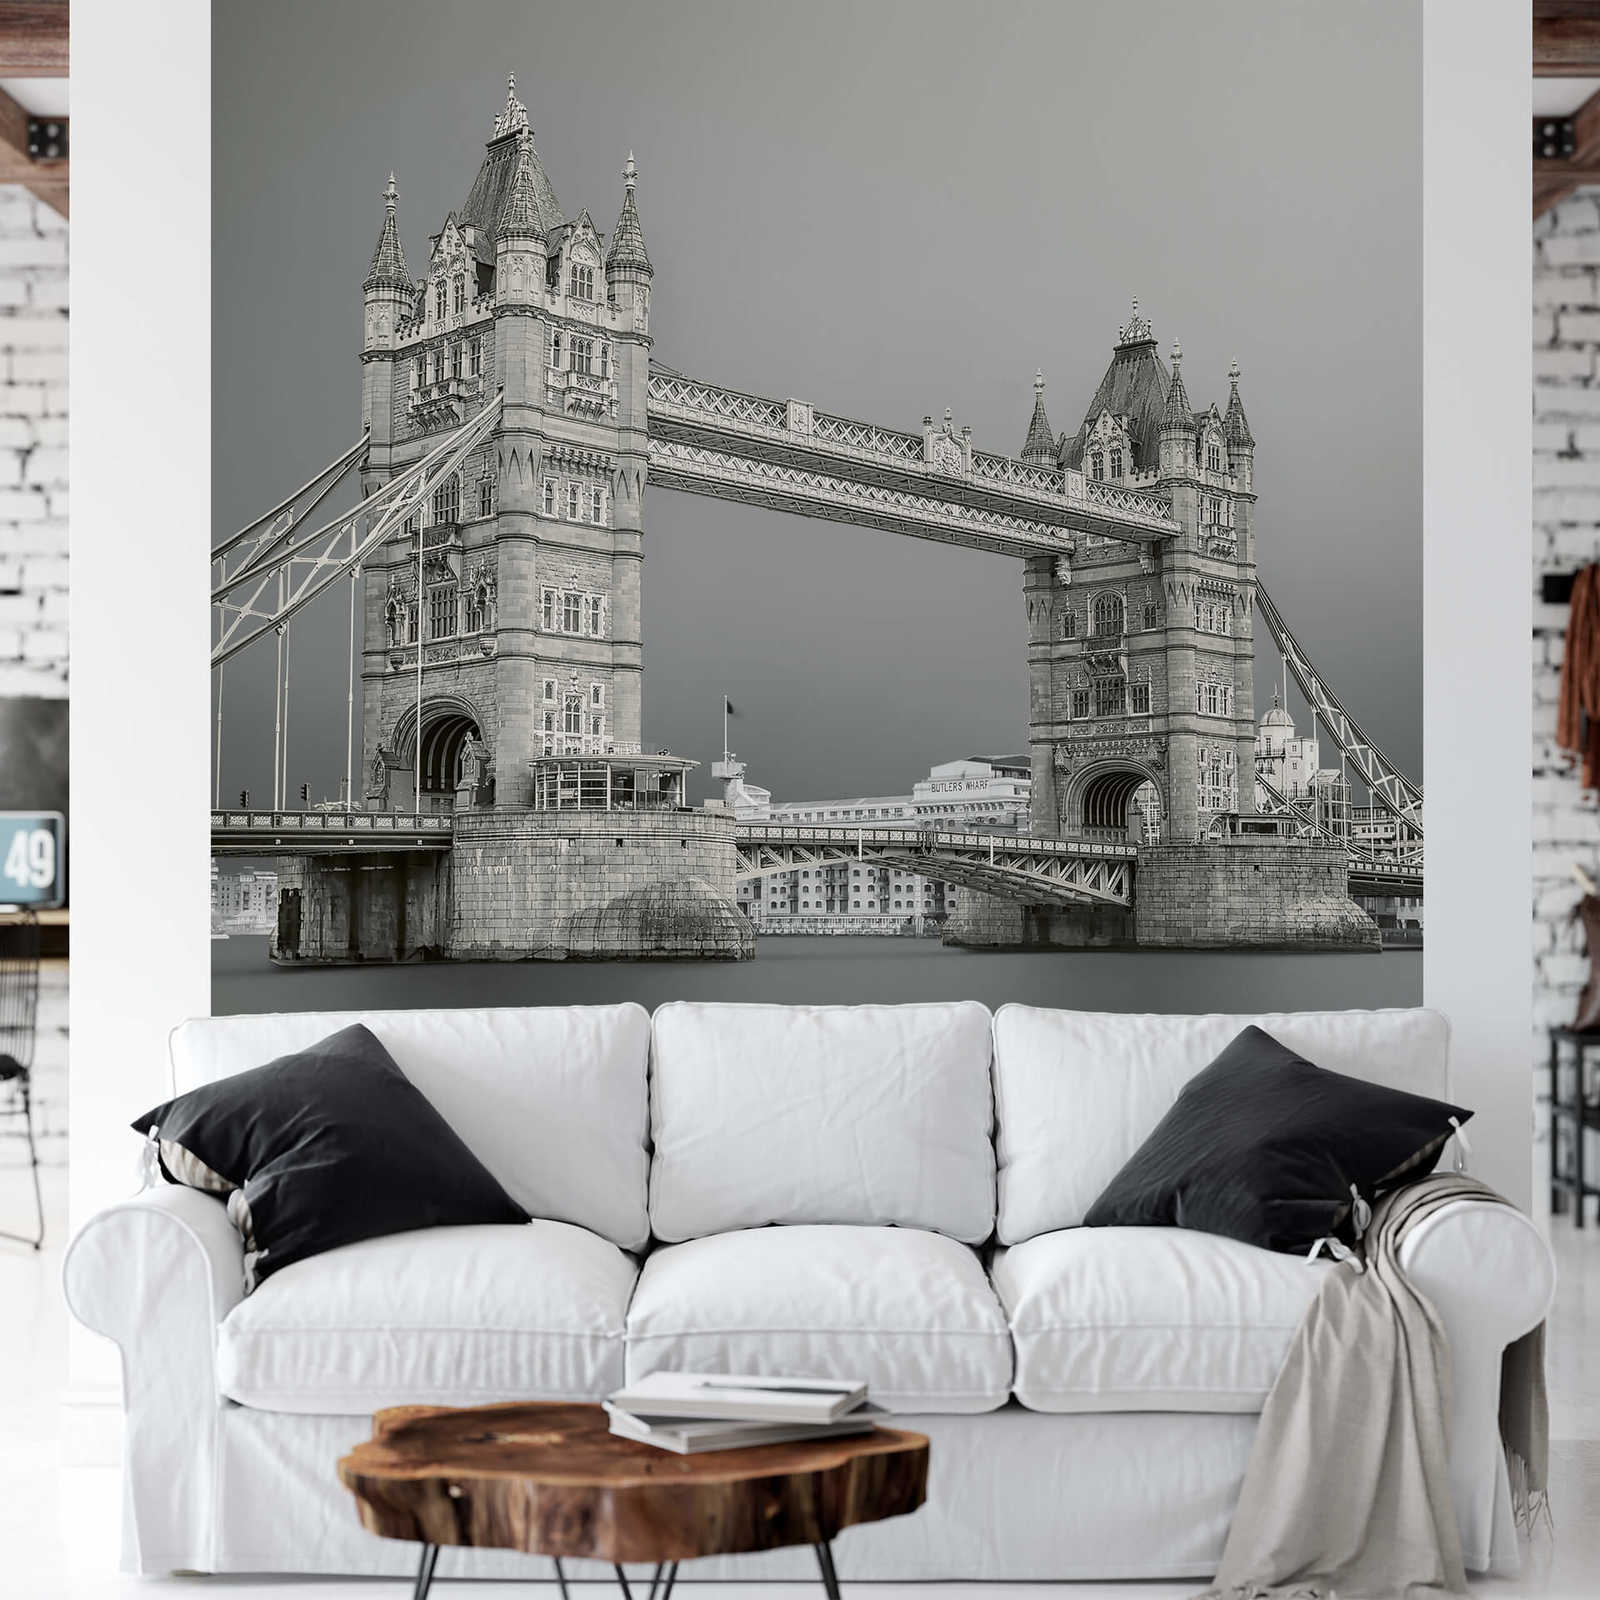             Photo wallpaper London Tower Bridge - grey, white, black
        